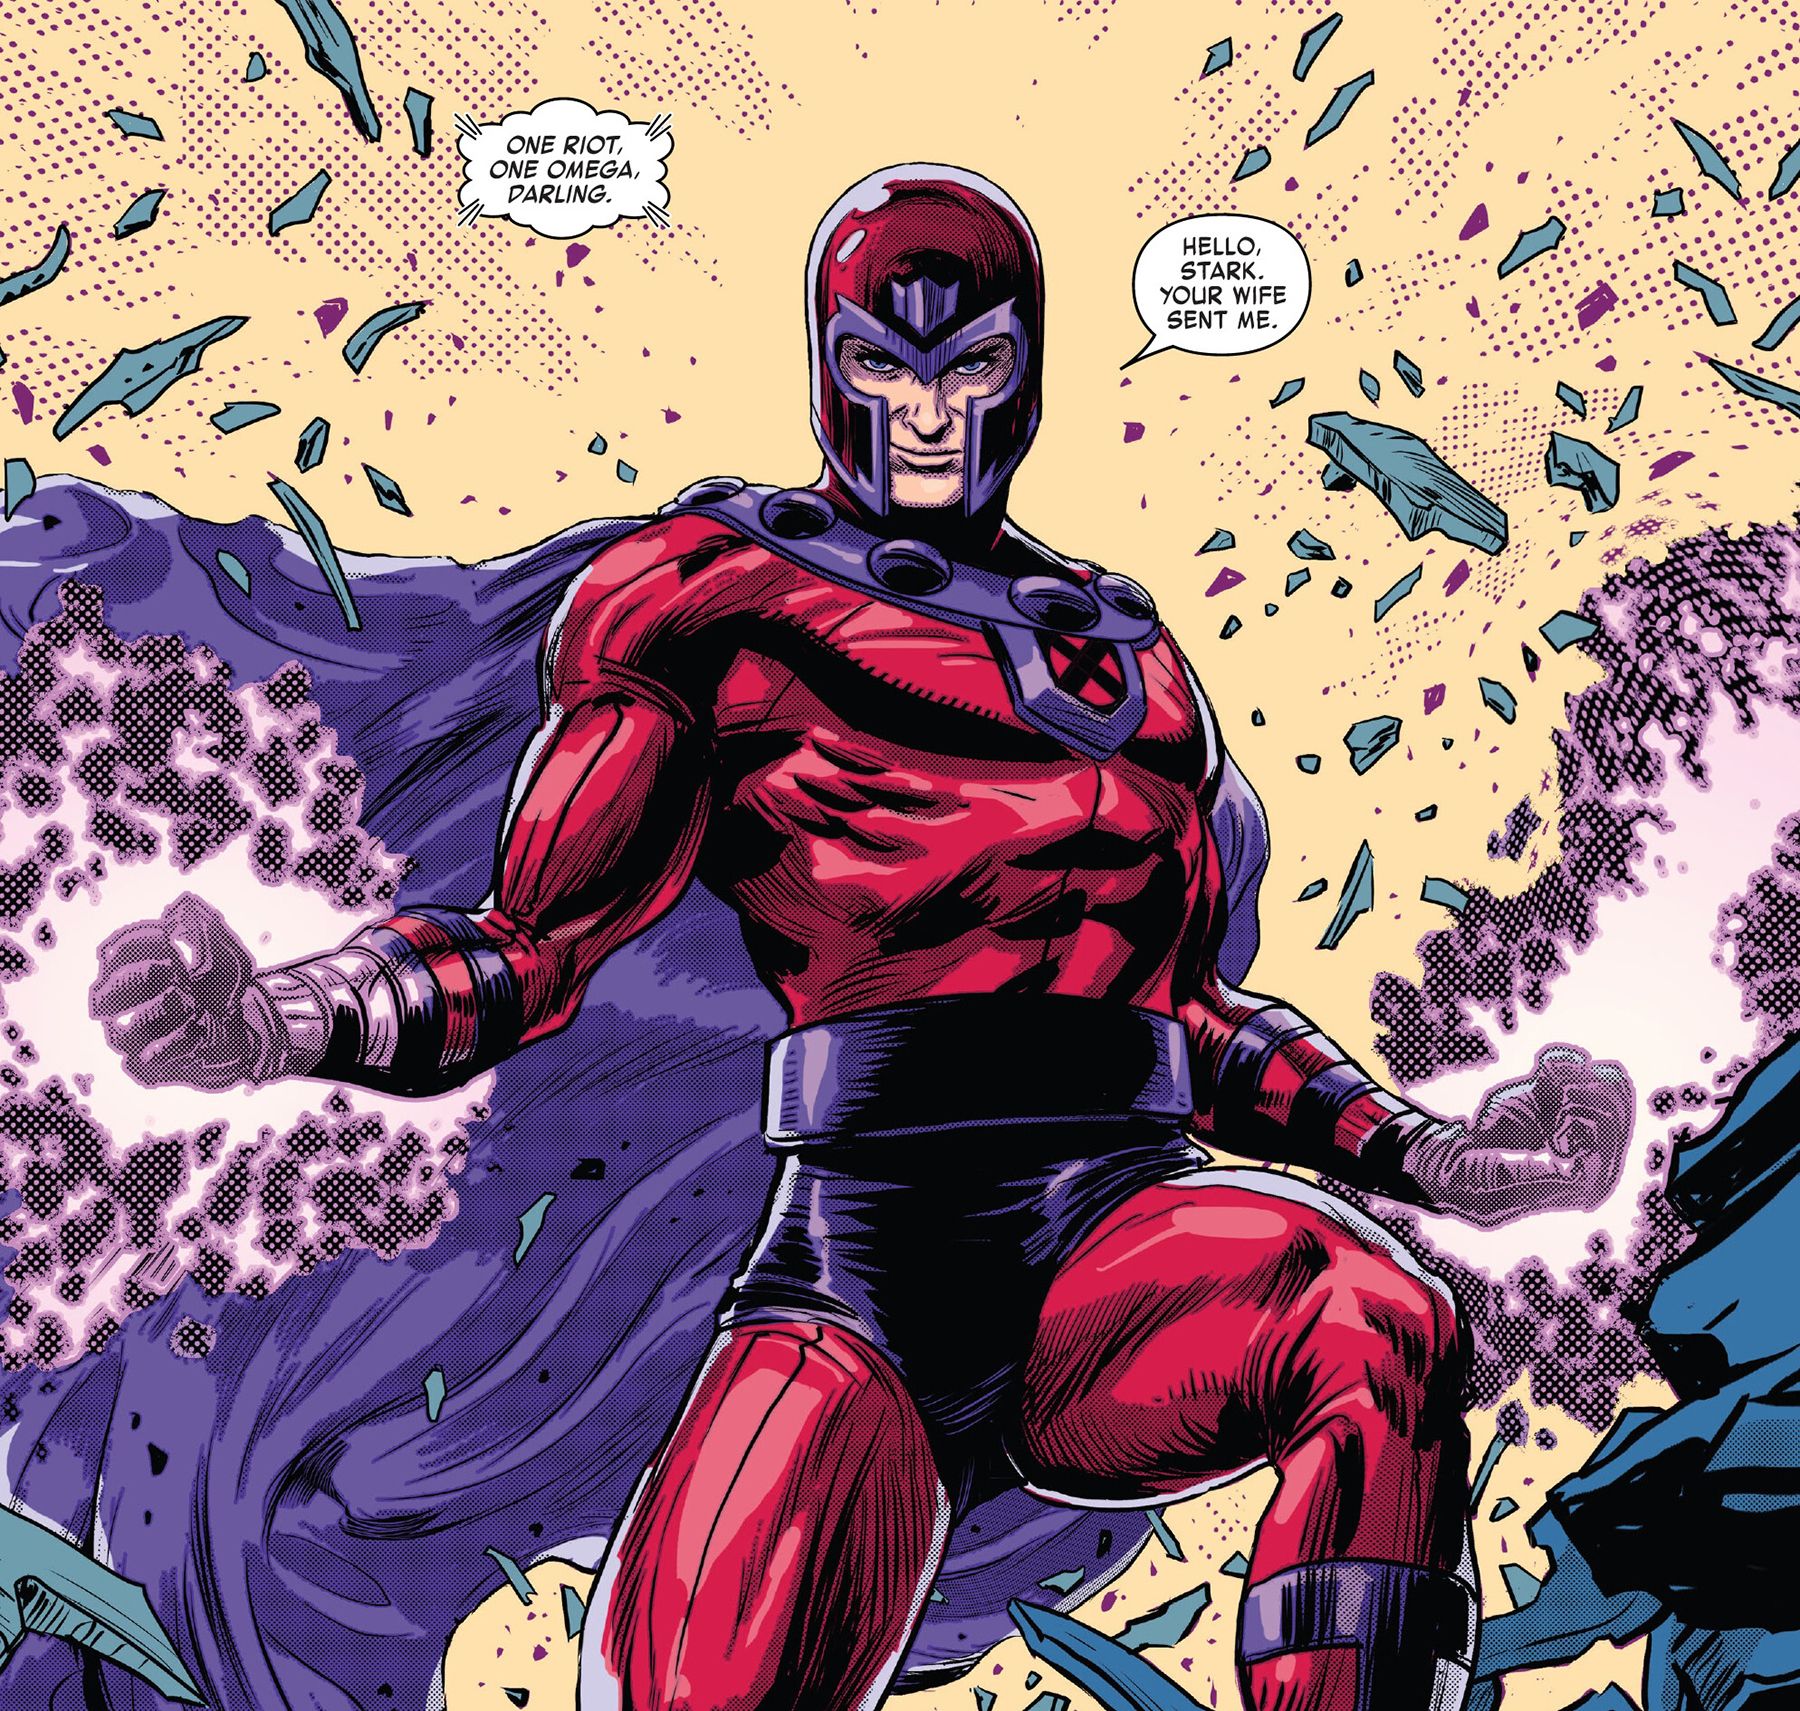 Invencible Iron Man #17 página 26 - Llega Magneto y le cuenta a Tony Stark "Me envió tu esposa."